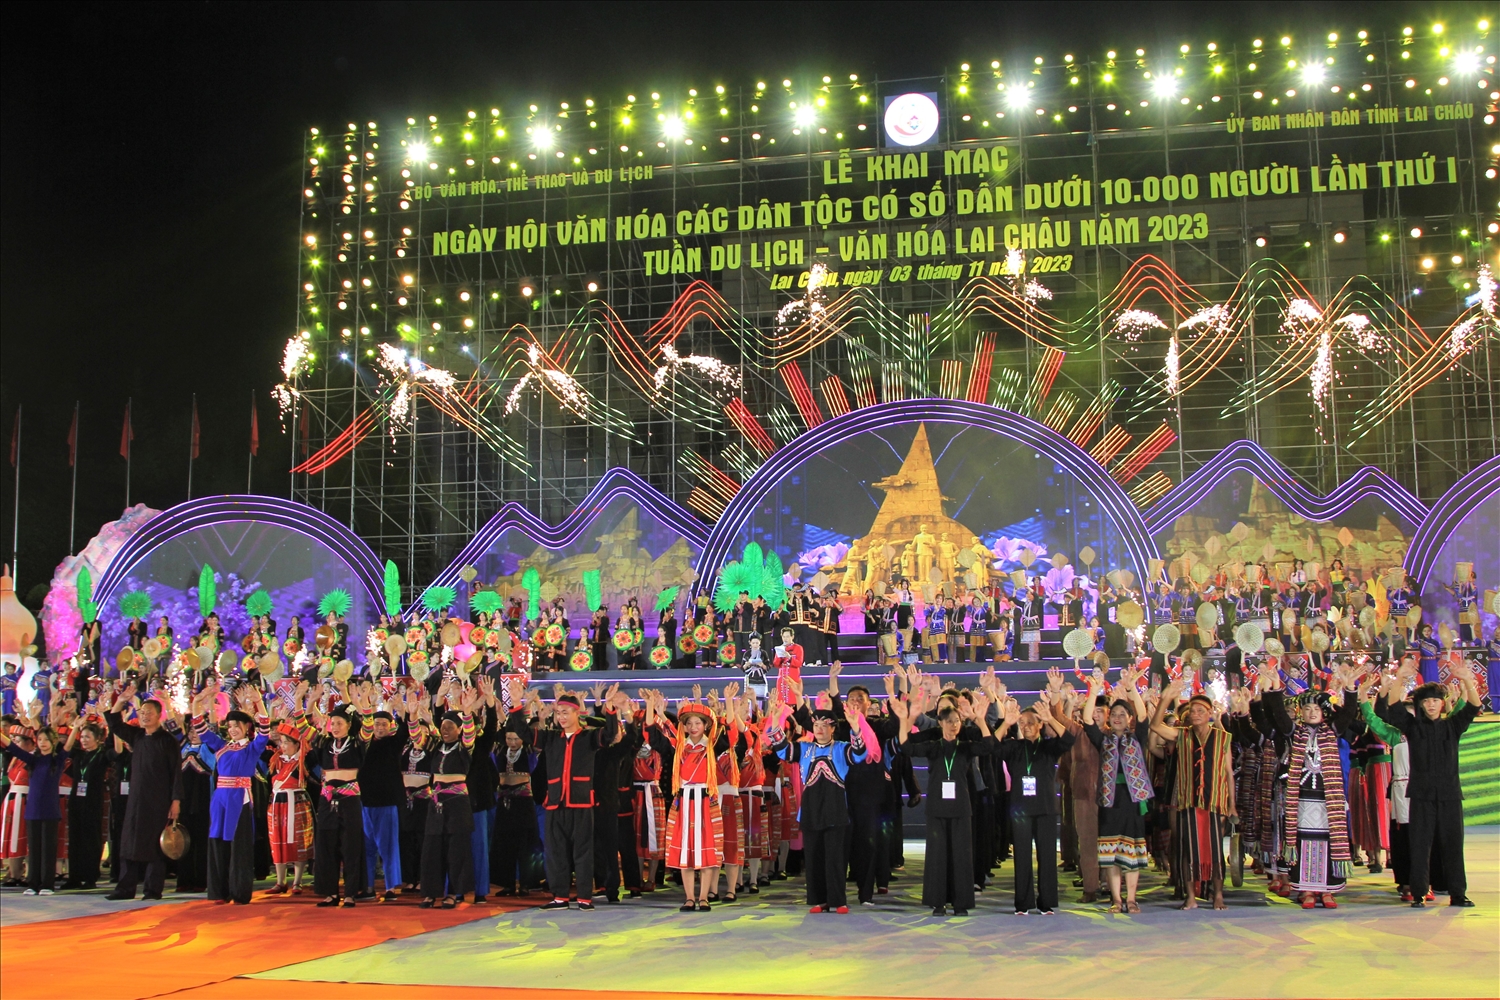 Các đoàn nghệ nhân đến từ các dân tộc có số dân dưới 10.000 tham dự ngày hội.